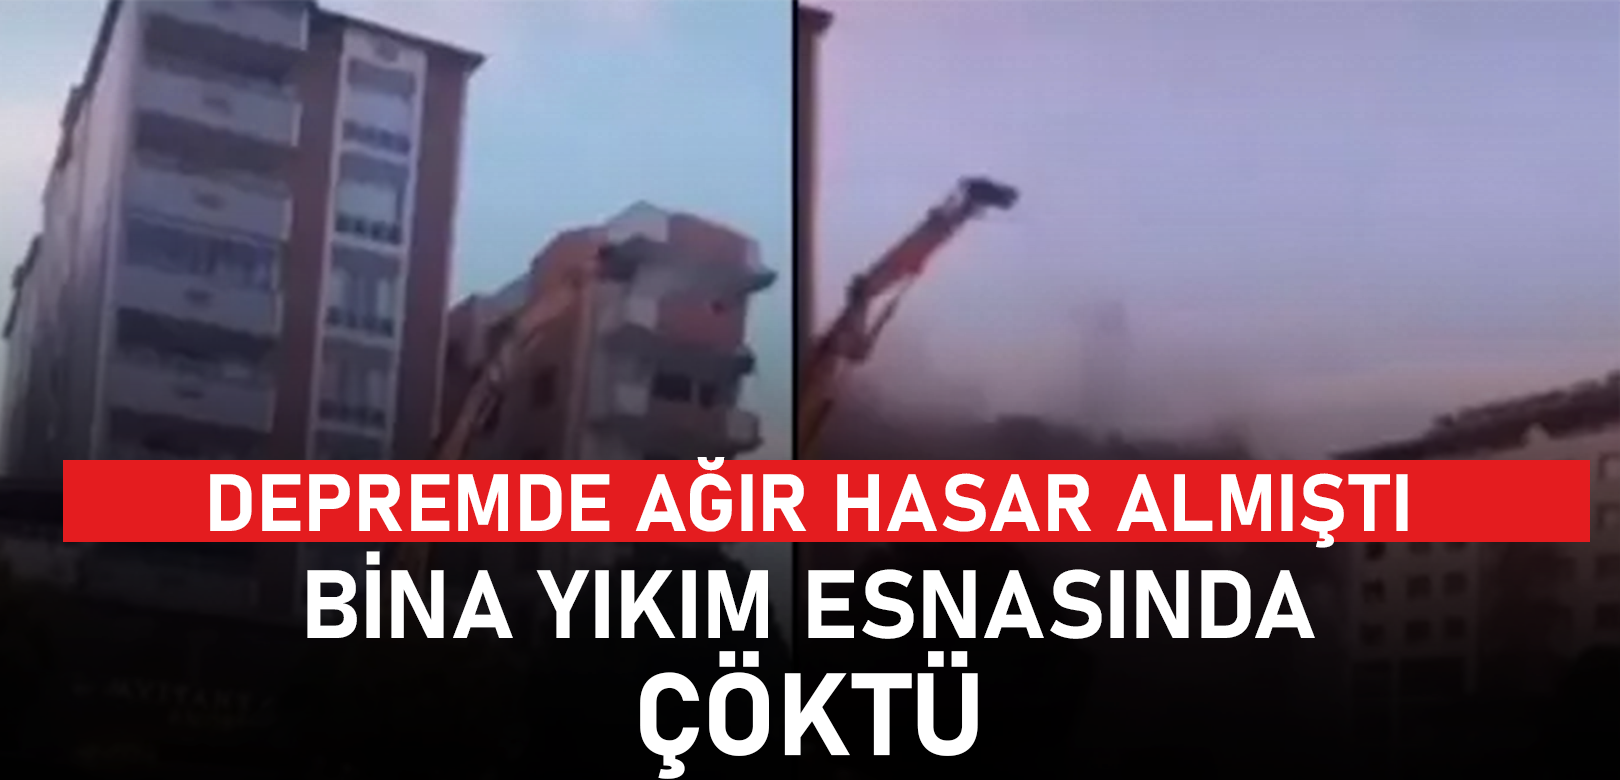 Gaziantep'te ağır hasarlı bina, yıkım esnasında çöktü